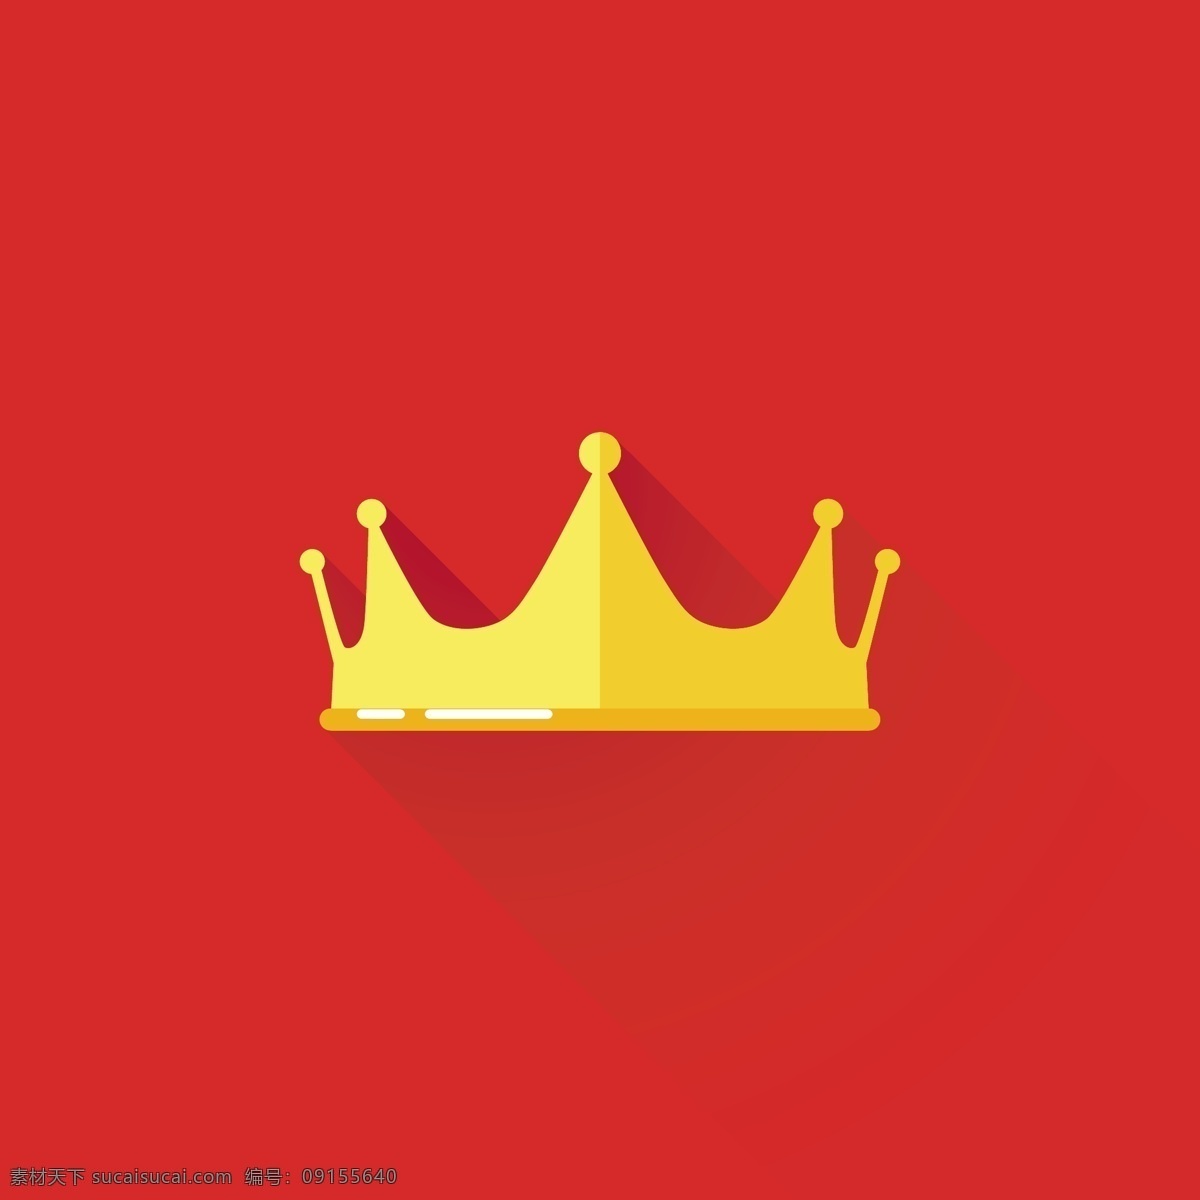 皇冠 欧式皇冠 头盔 权力 王冠 皇家 皇族 矢量 标志图标 其他图标